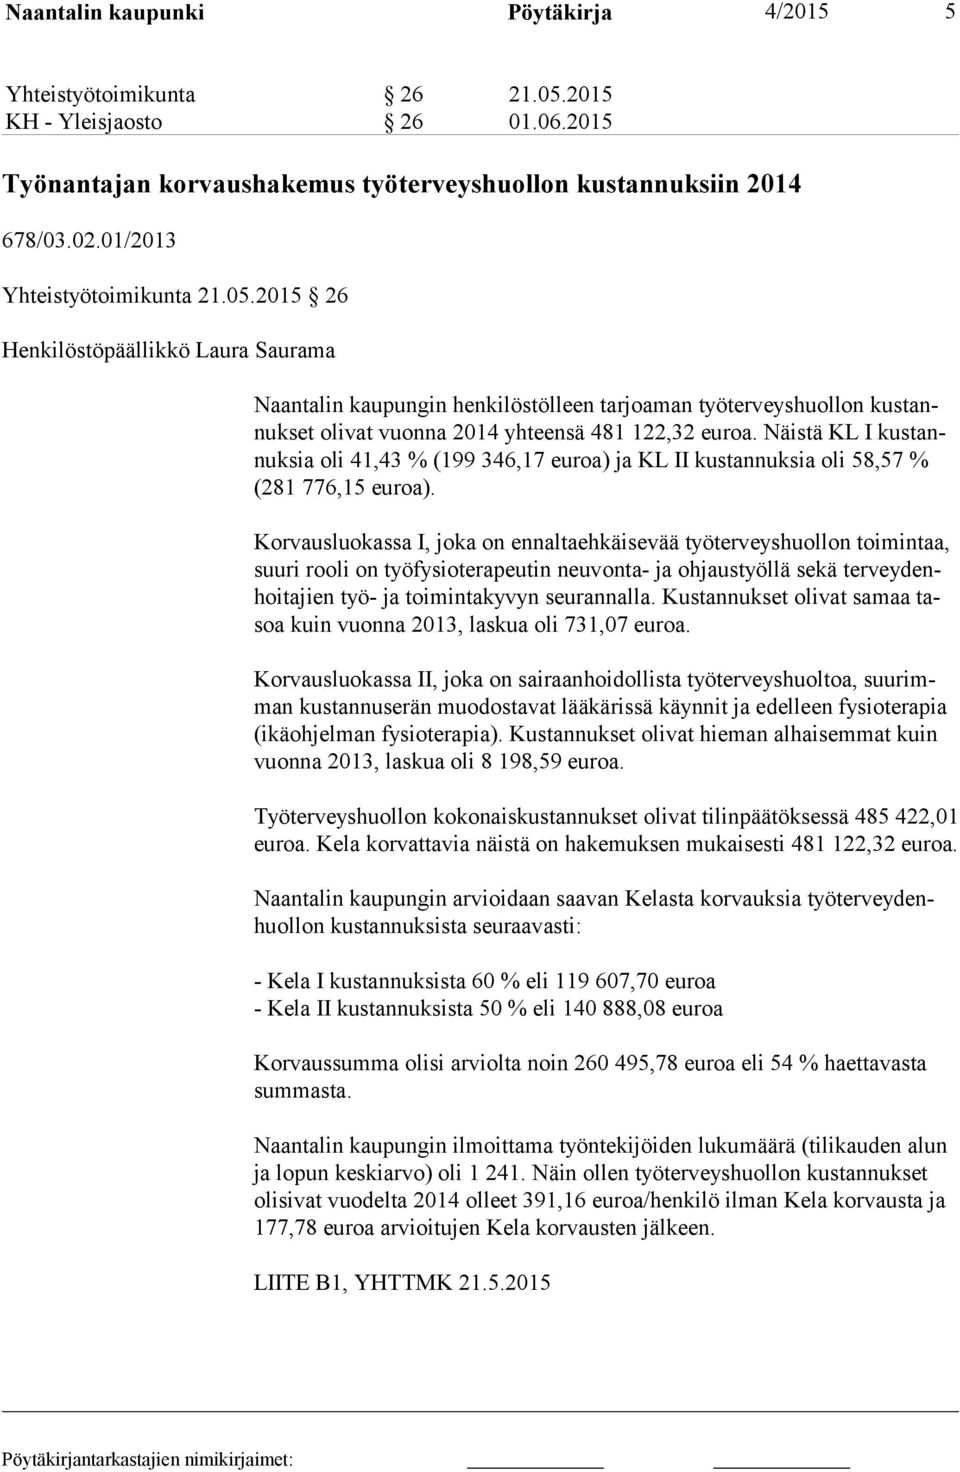 Näistä KL I kus tannuk sia oli 41,43 % (199 346,17 euroa) ja KL II kustannuksia oli 58,57 % (281 776,15 euroa).